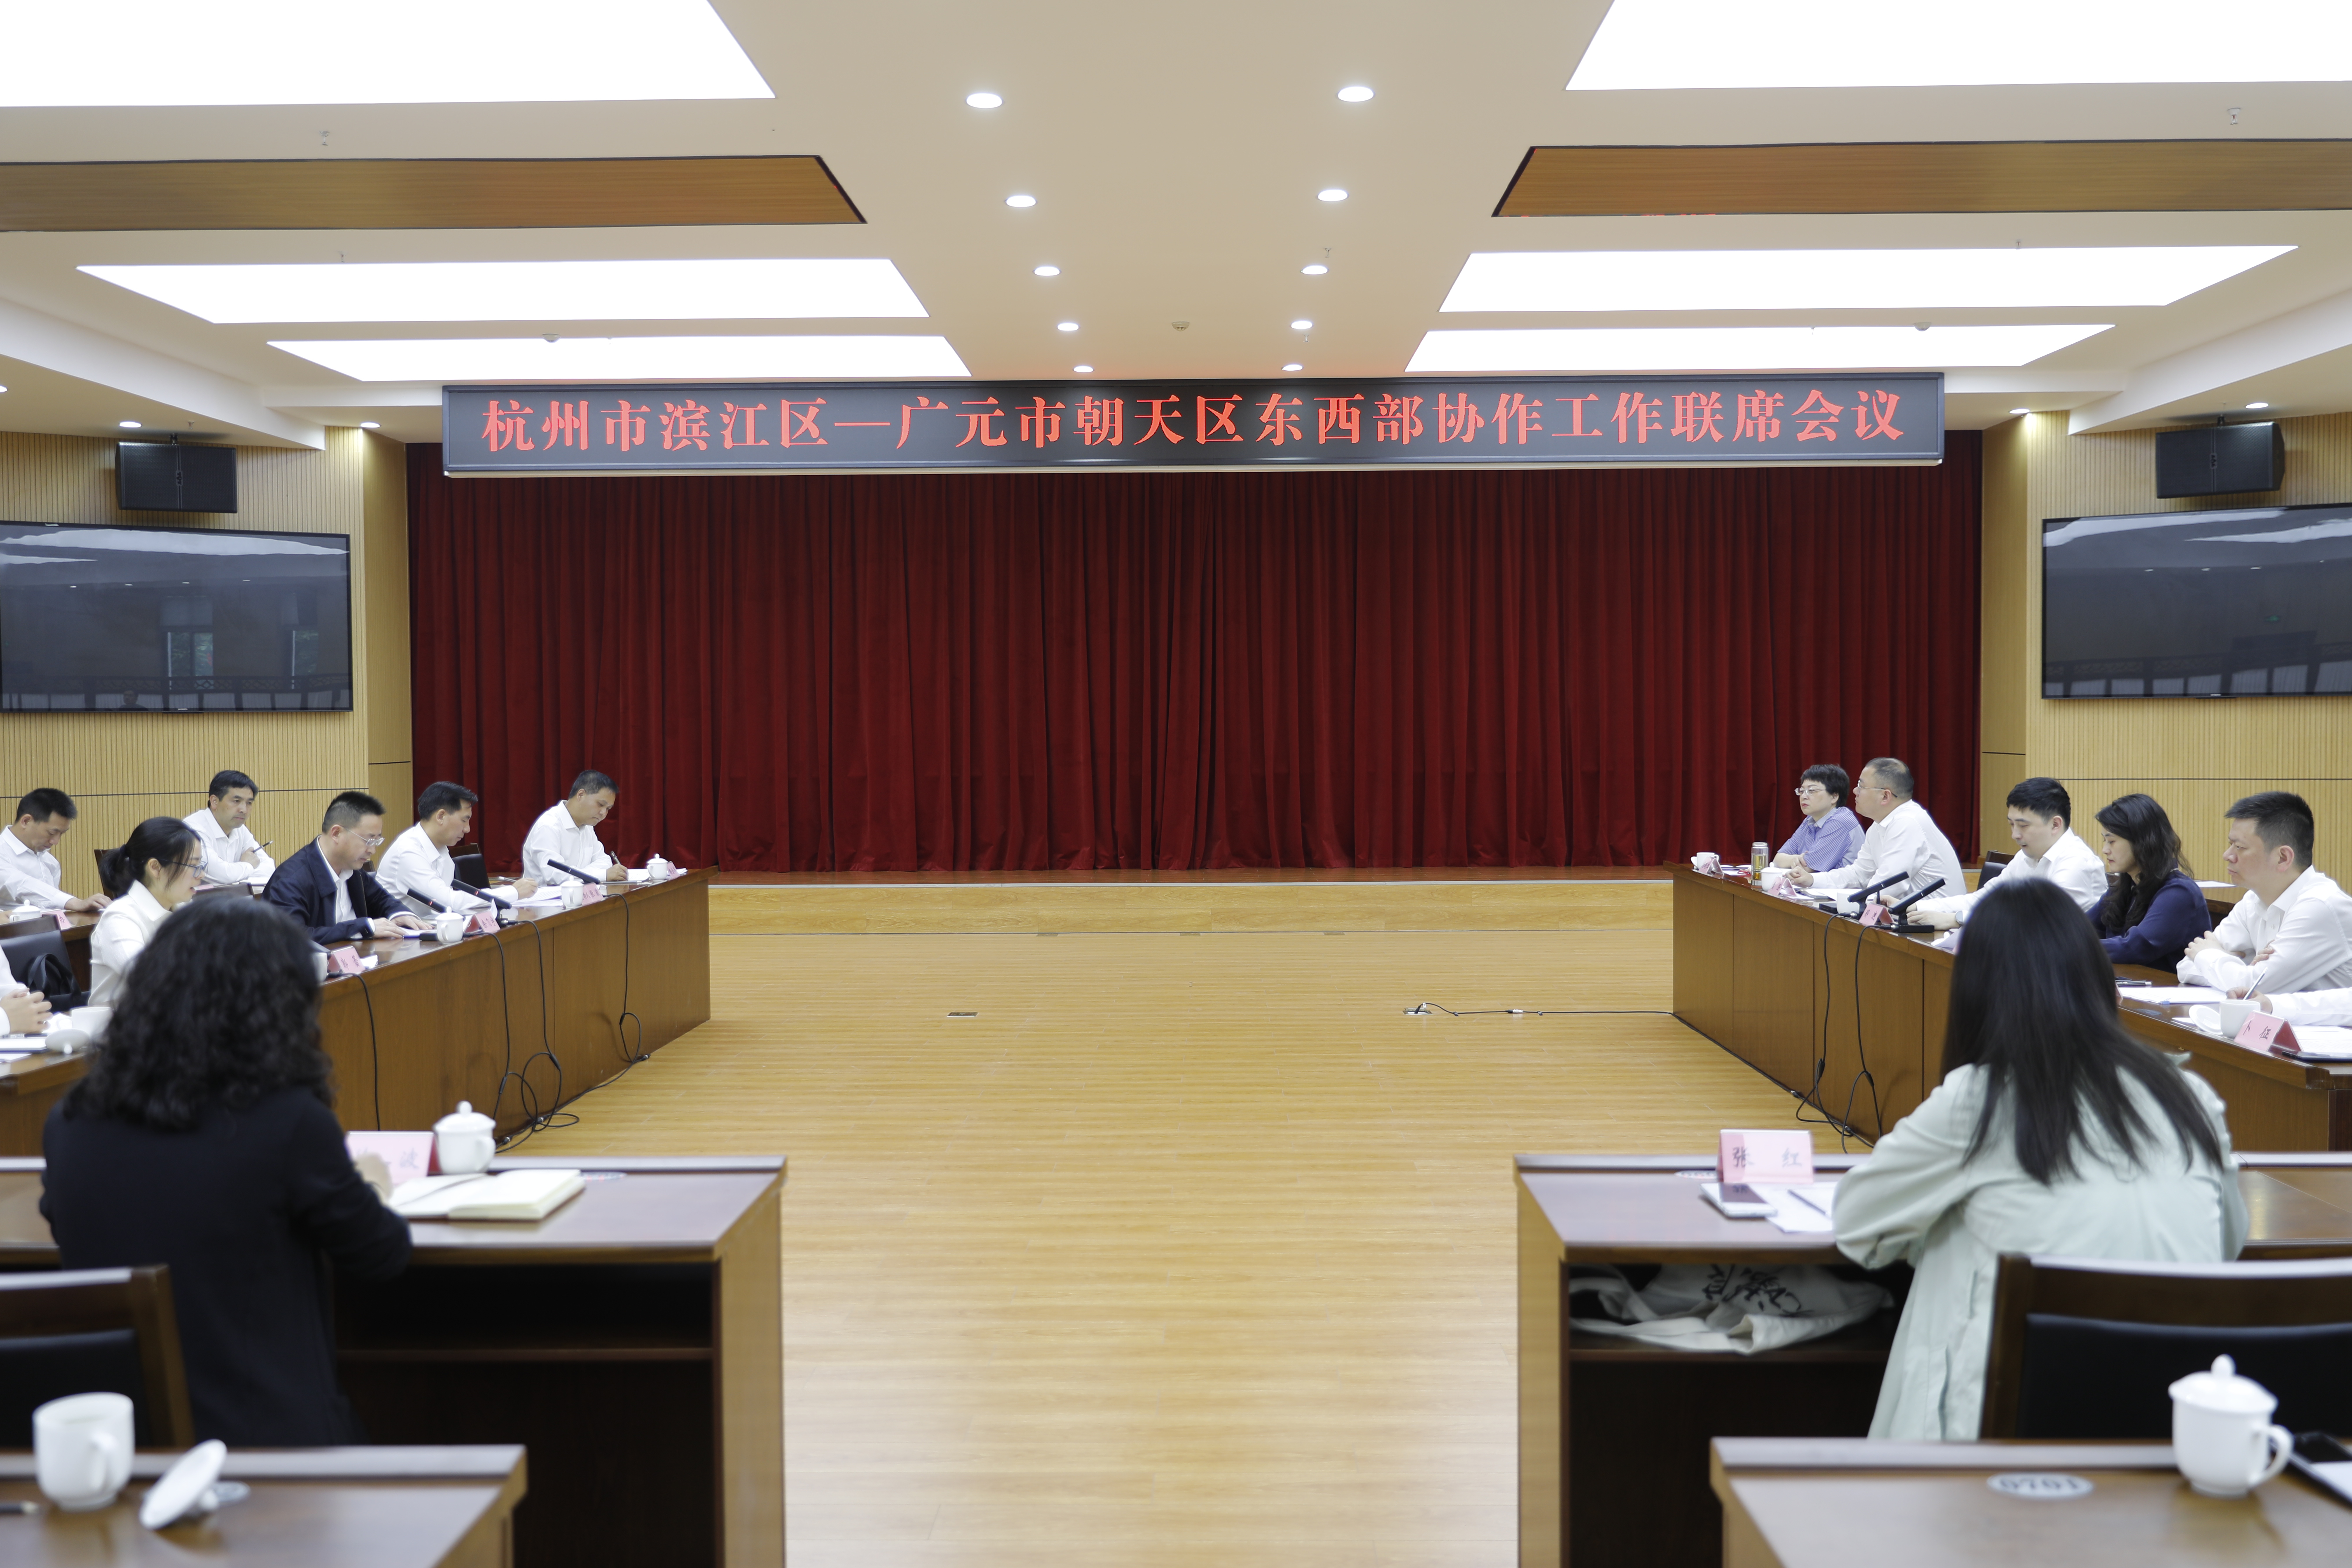  滨江区党政代表团来朝考察并举行东西部协作工作联席会议